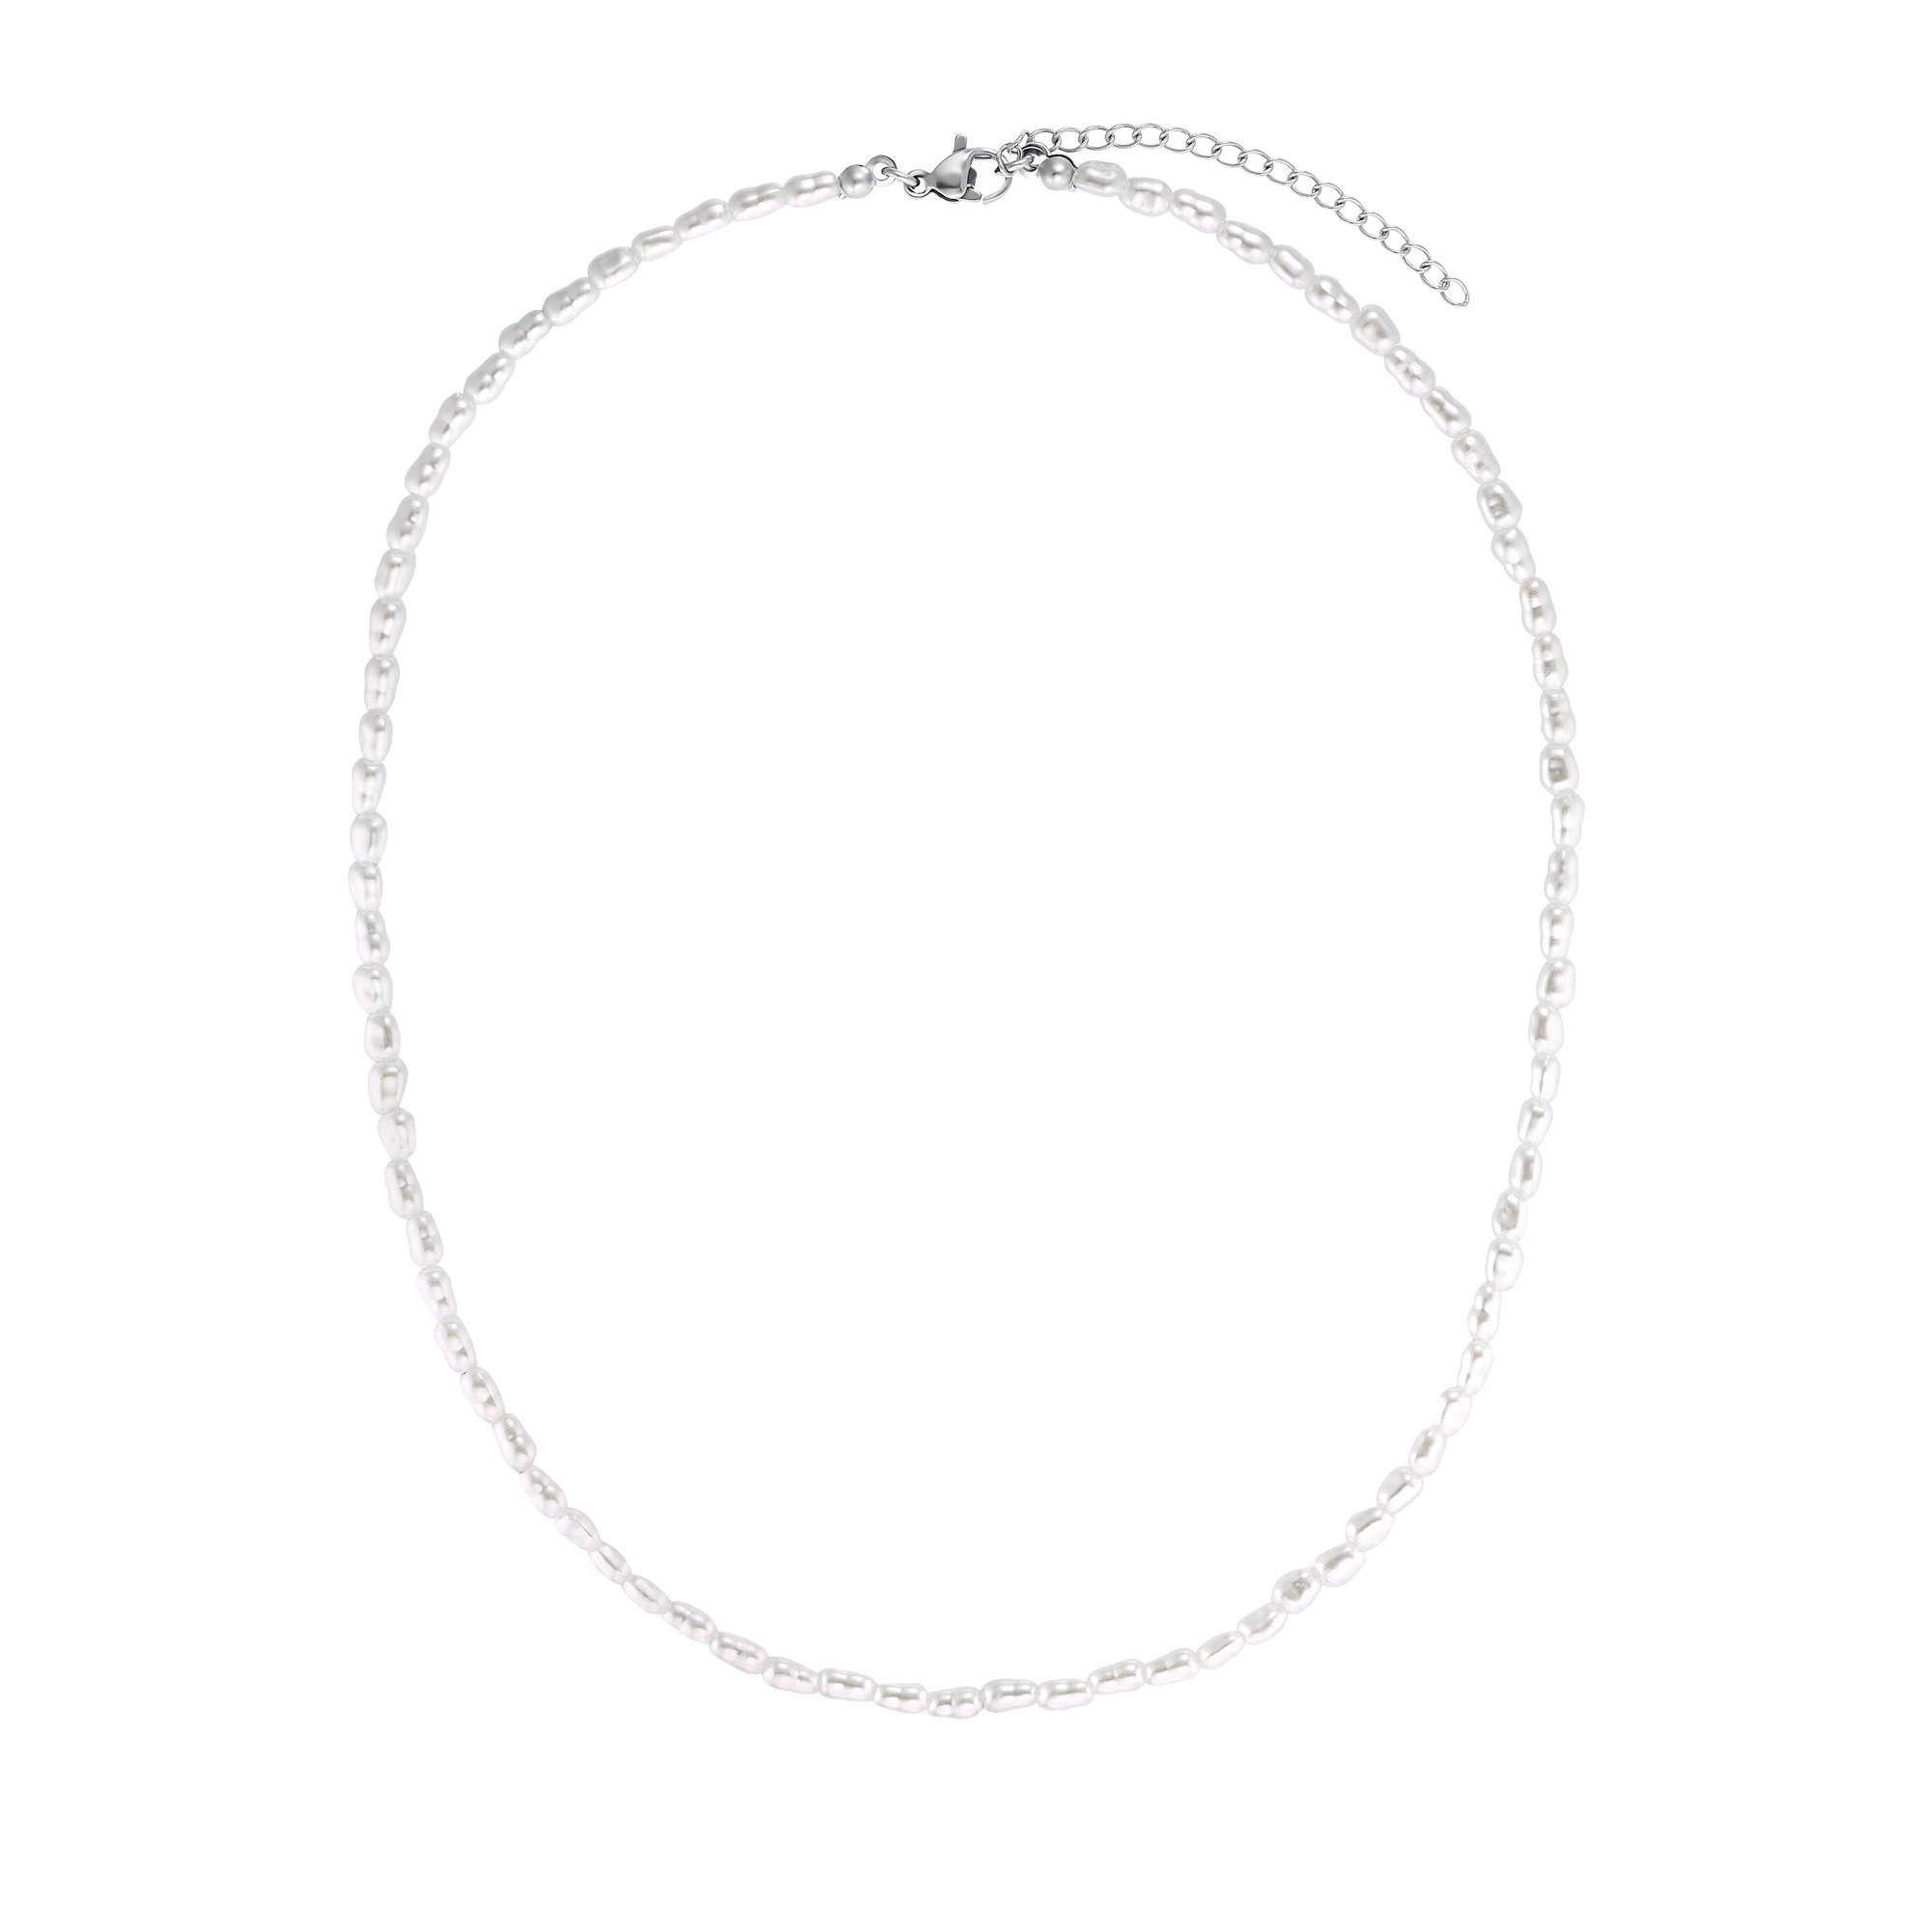 Heideman Collier Aaron silberfarben poliert (inkl. Geschenkverpackung), Halskette mit Perlen für Männer